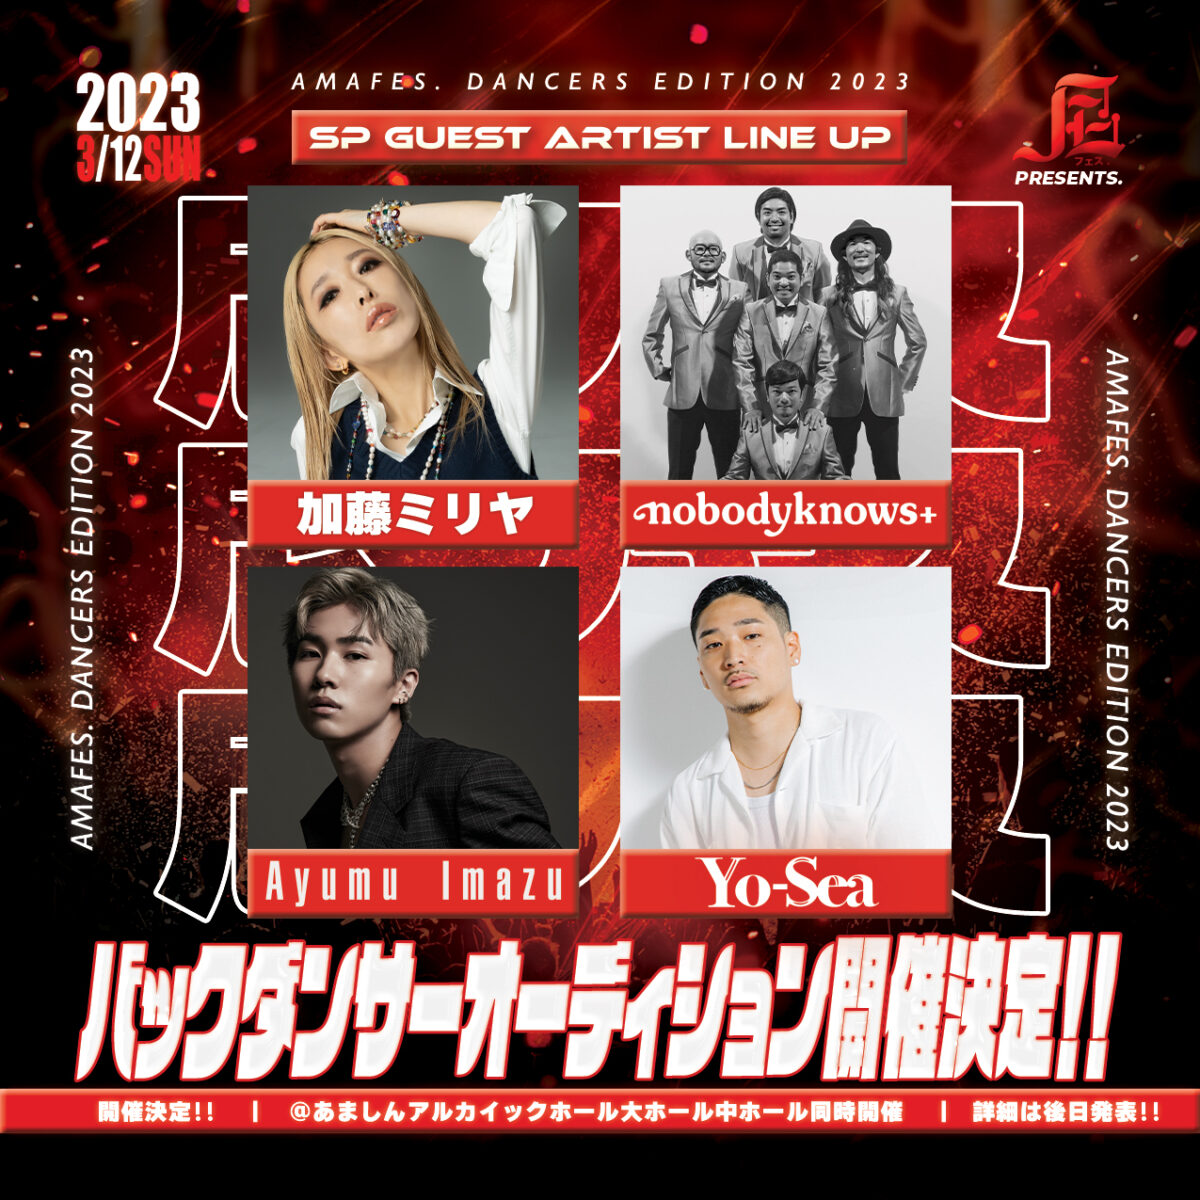 【大募集】バックダンサーオーディション開催 尼フェス “DANCERS EDITION” 2023